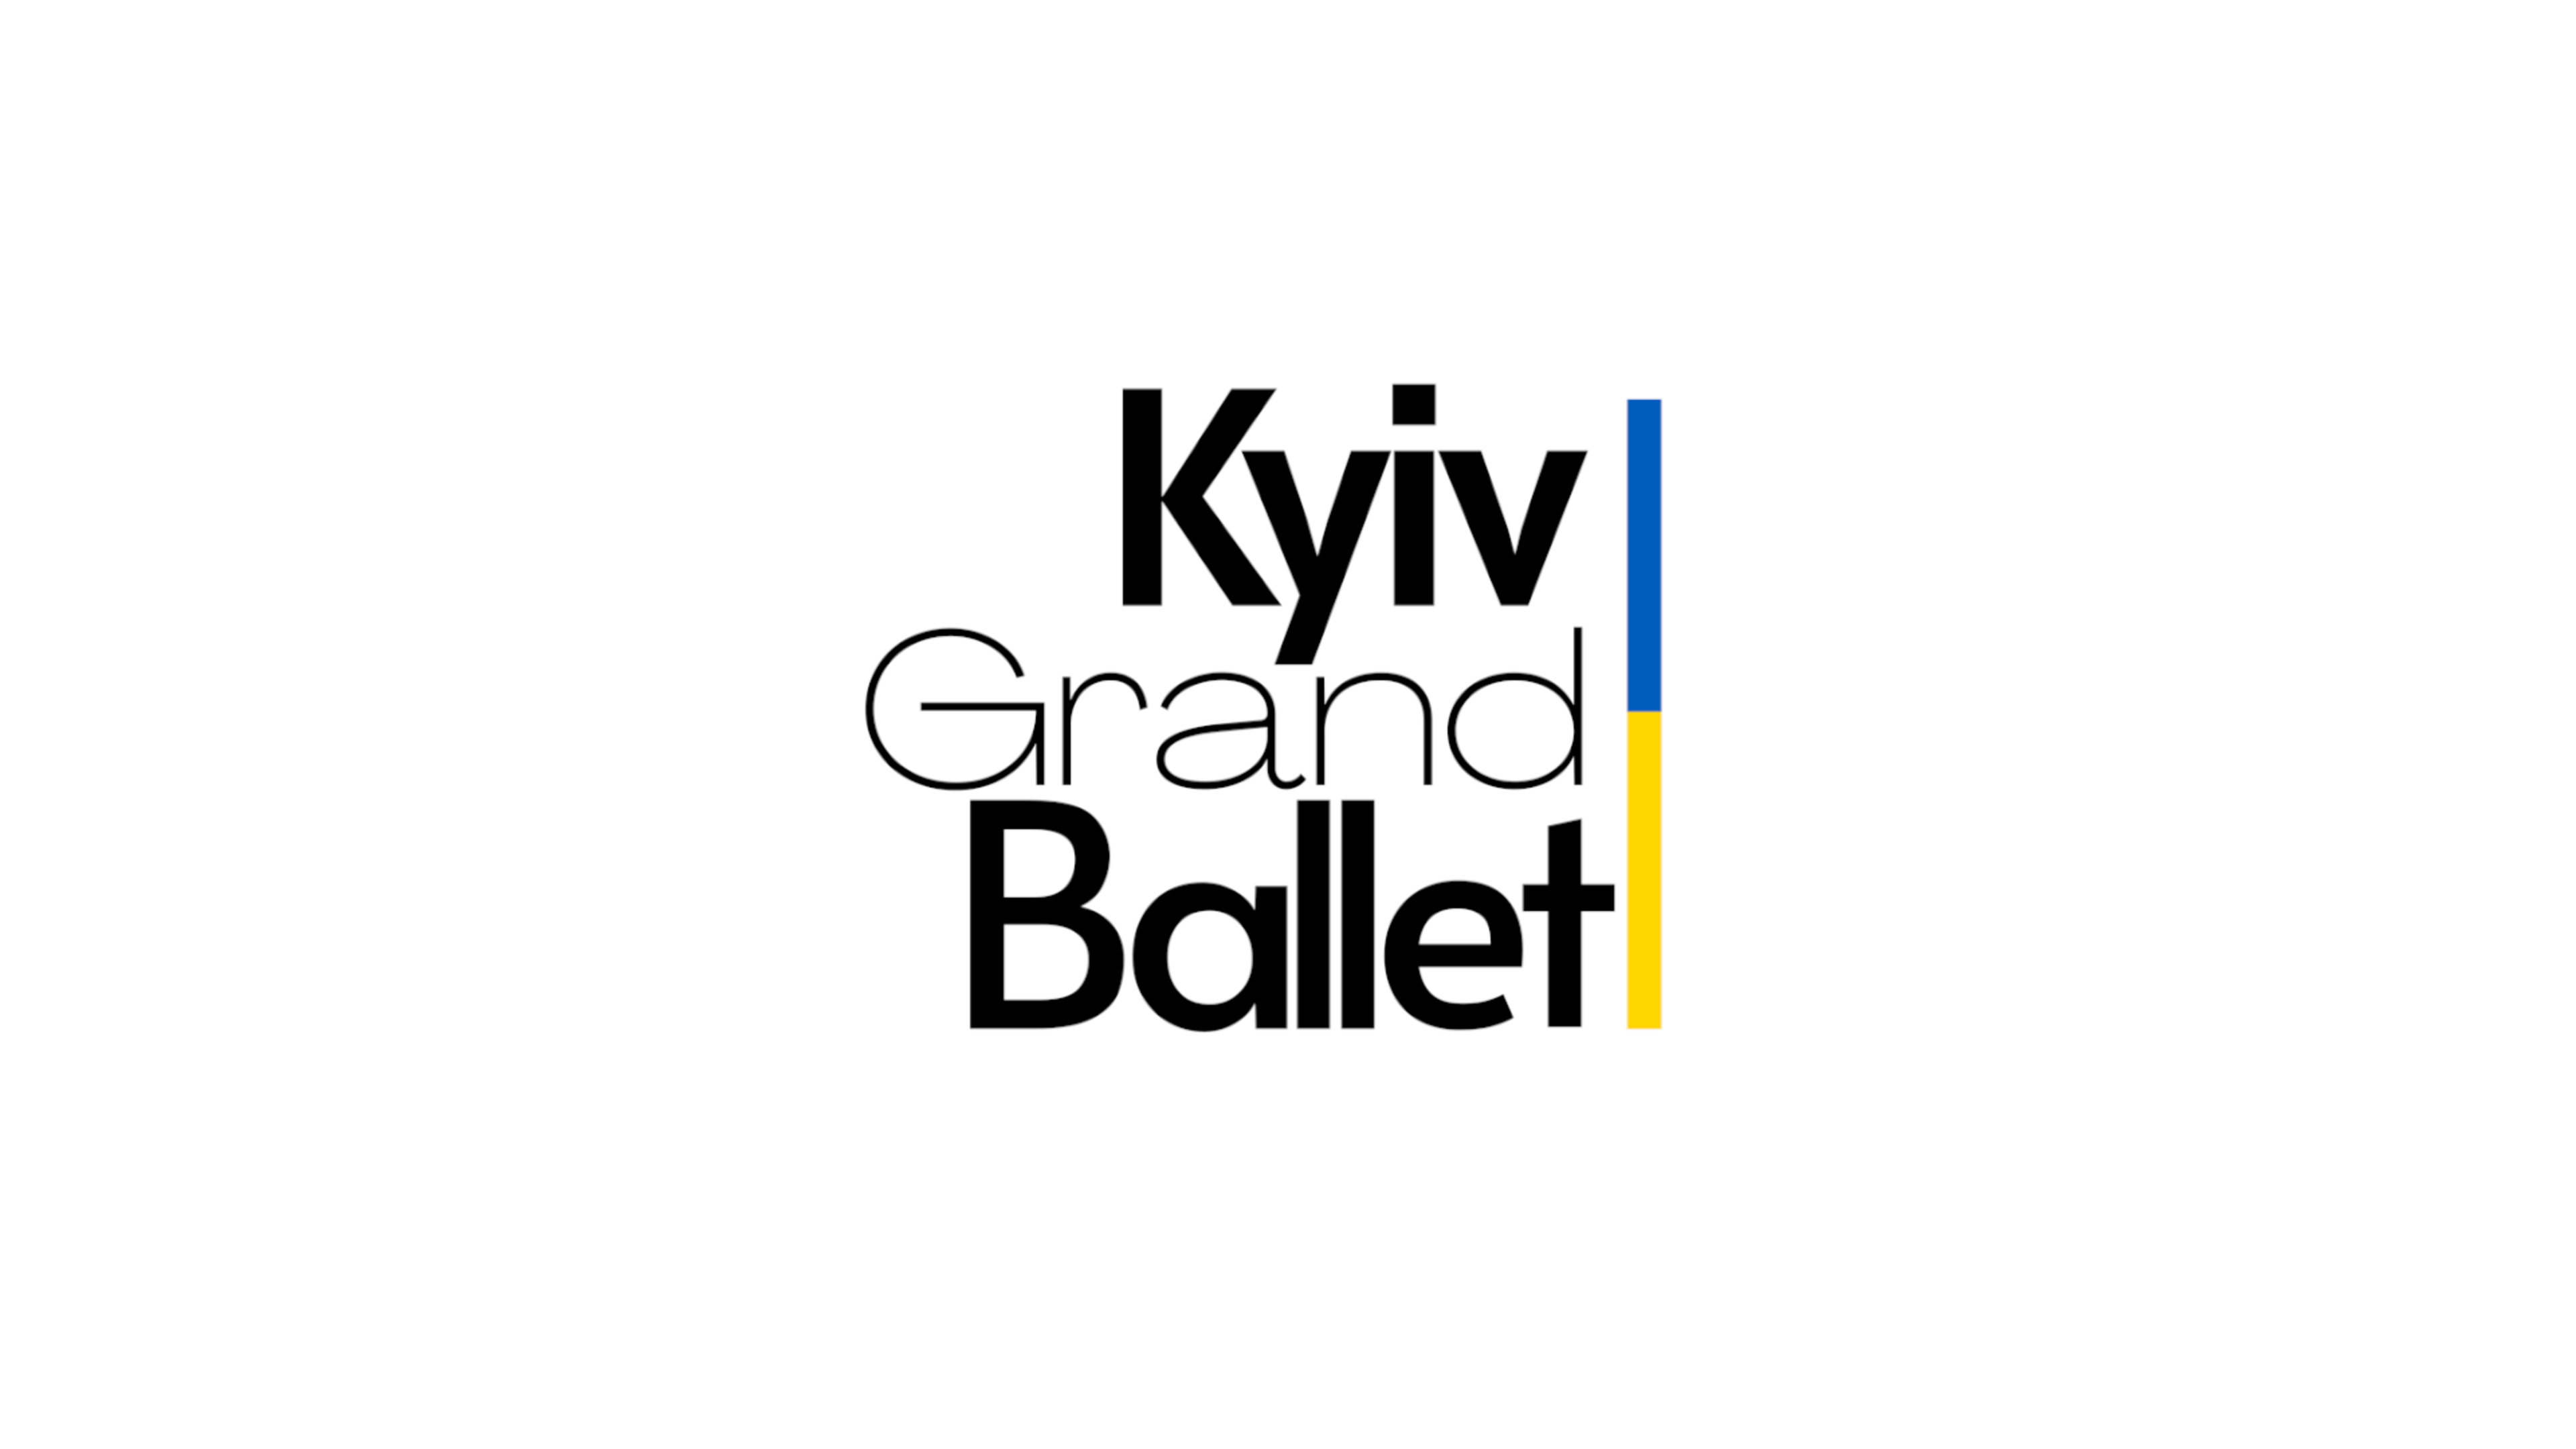 Kyiv_Grand_Ballet_logo